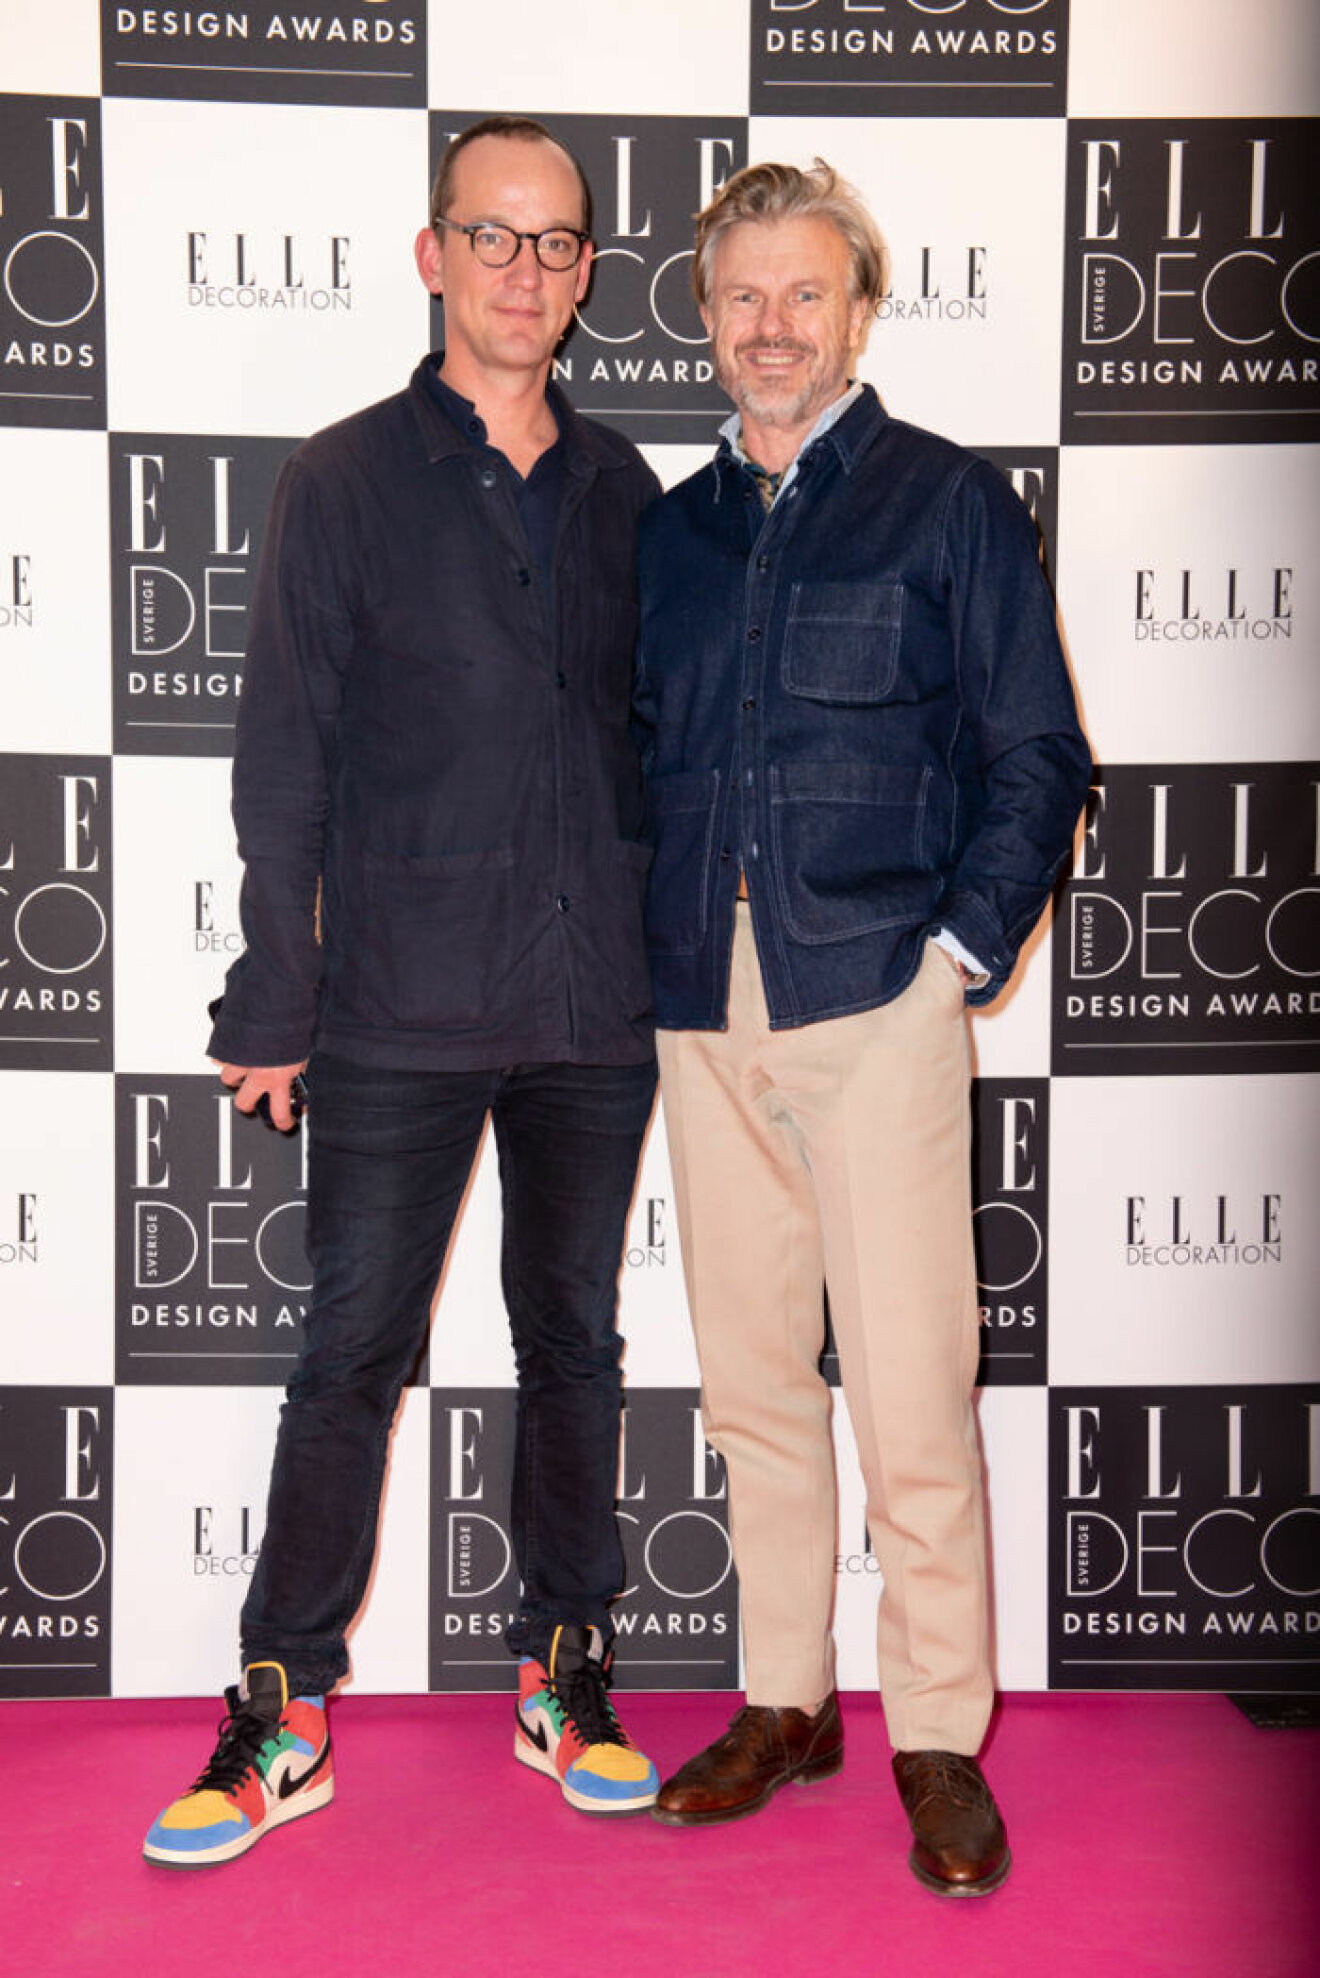 Michael Storåkers och Thomas Sandell på ELLE Deco Design Awards 2020